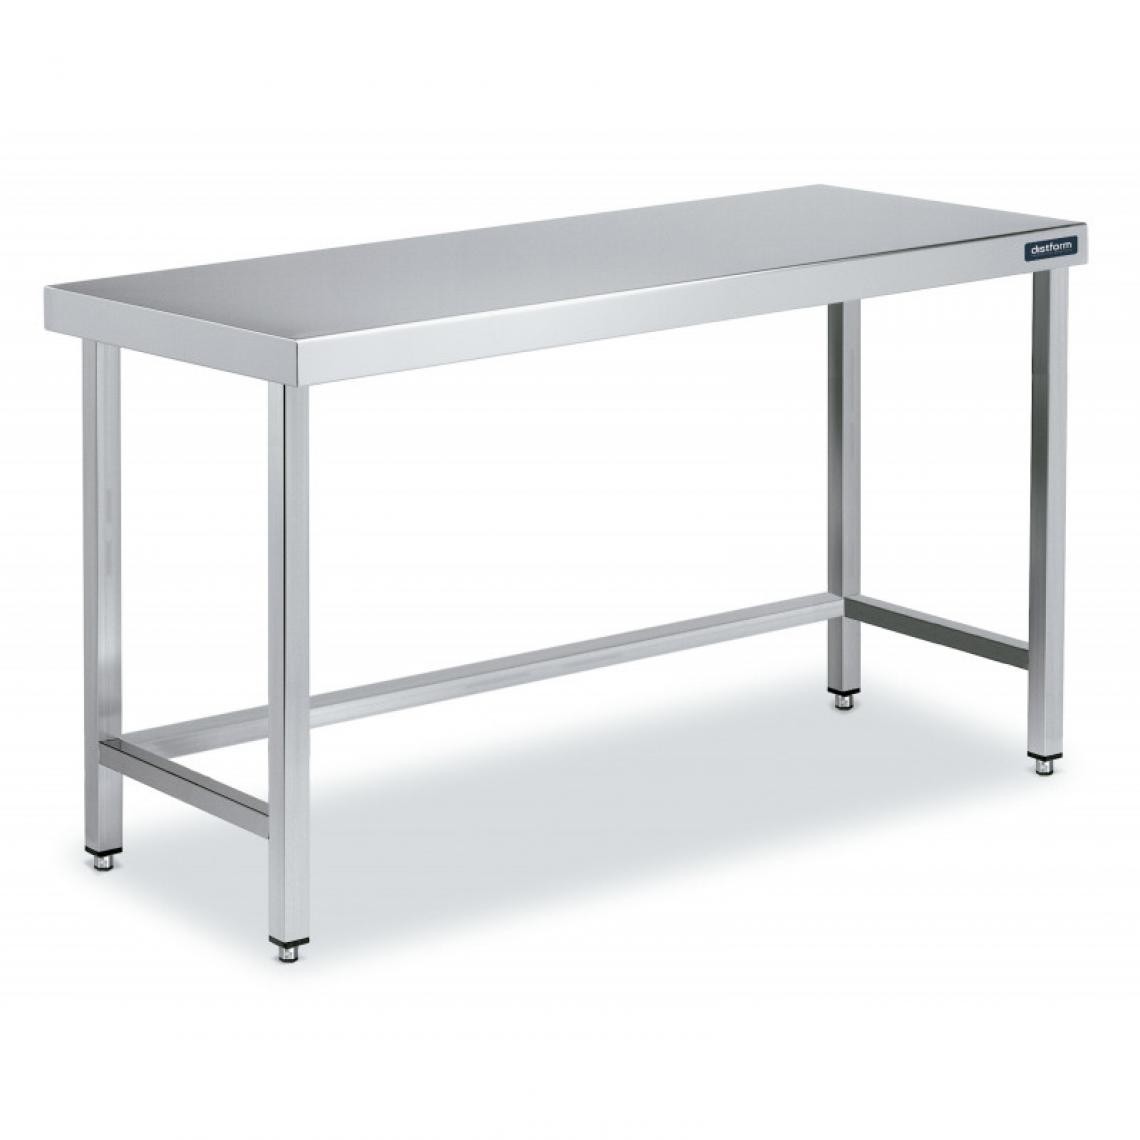 DISTFORM - Table Centrale en Inox avec renforts Profondeur 700 mm - Distform - Acier inoxydable2800x700 - Tables à manger